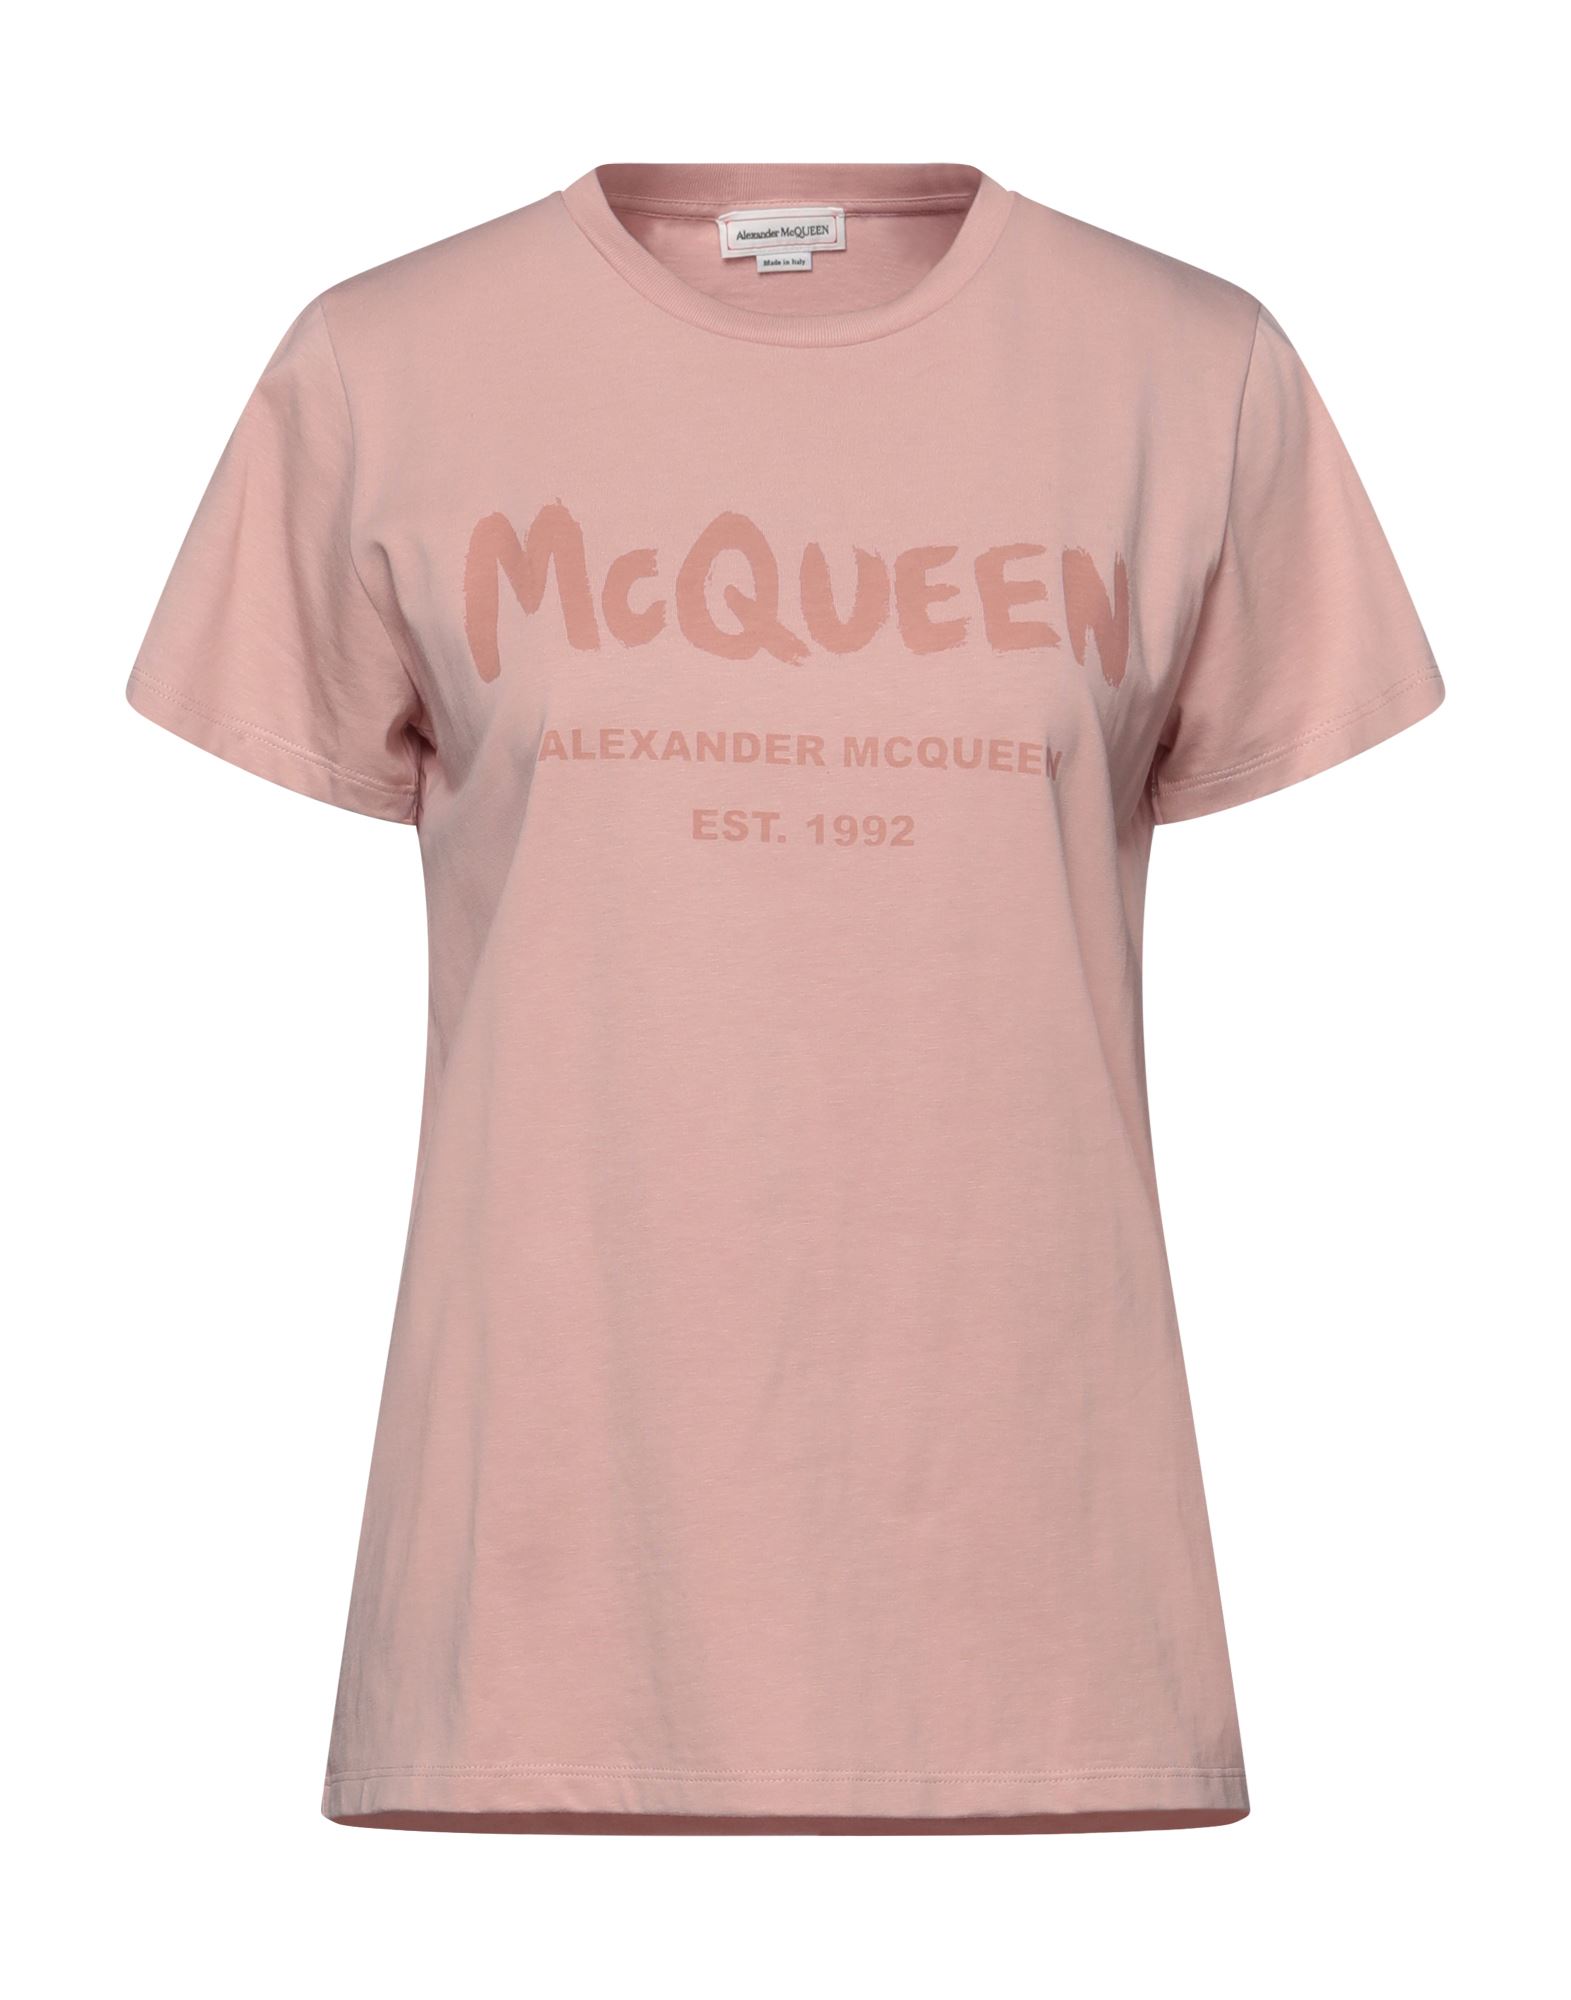 Alexander Mcqueen T-shirts In Blush